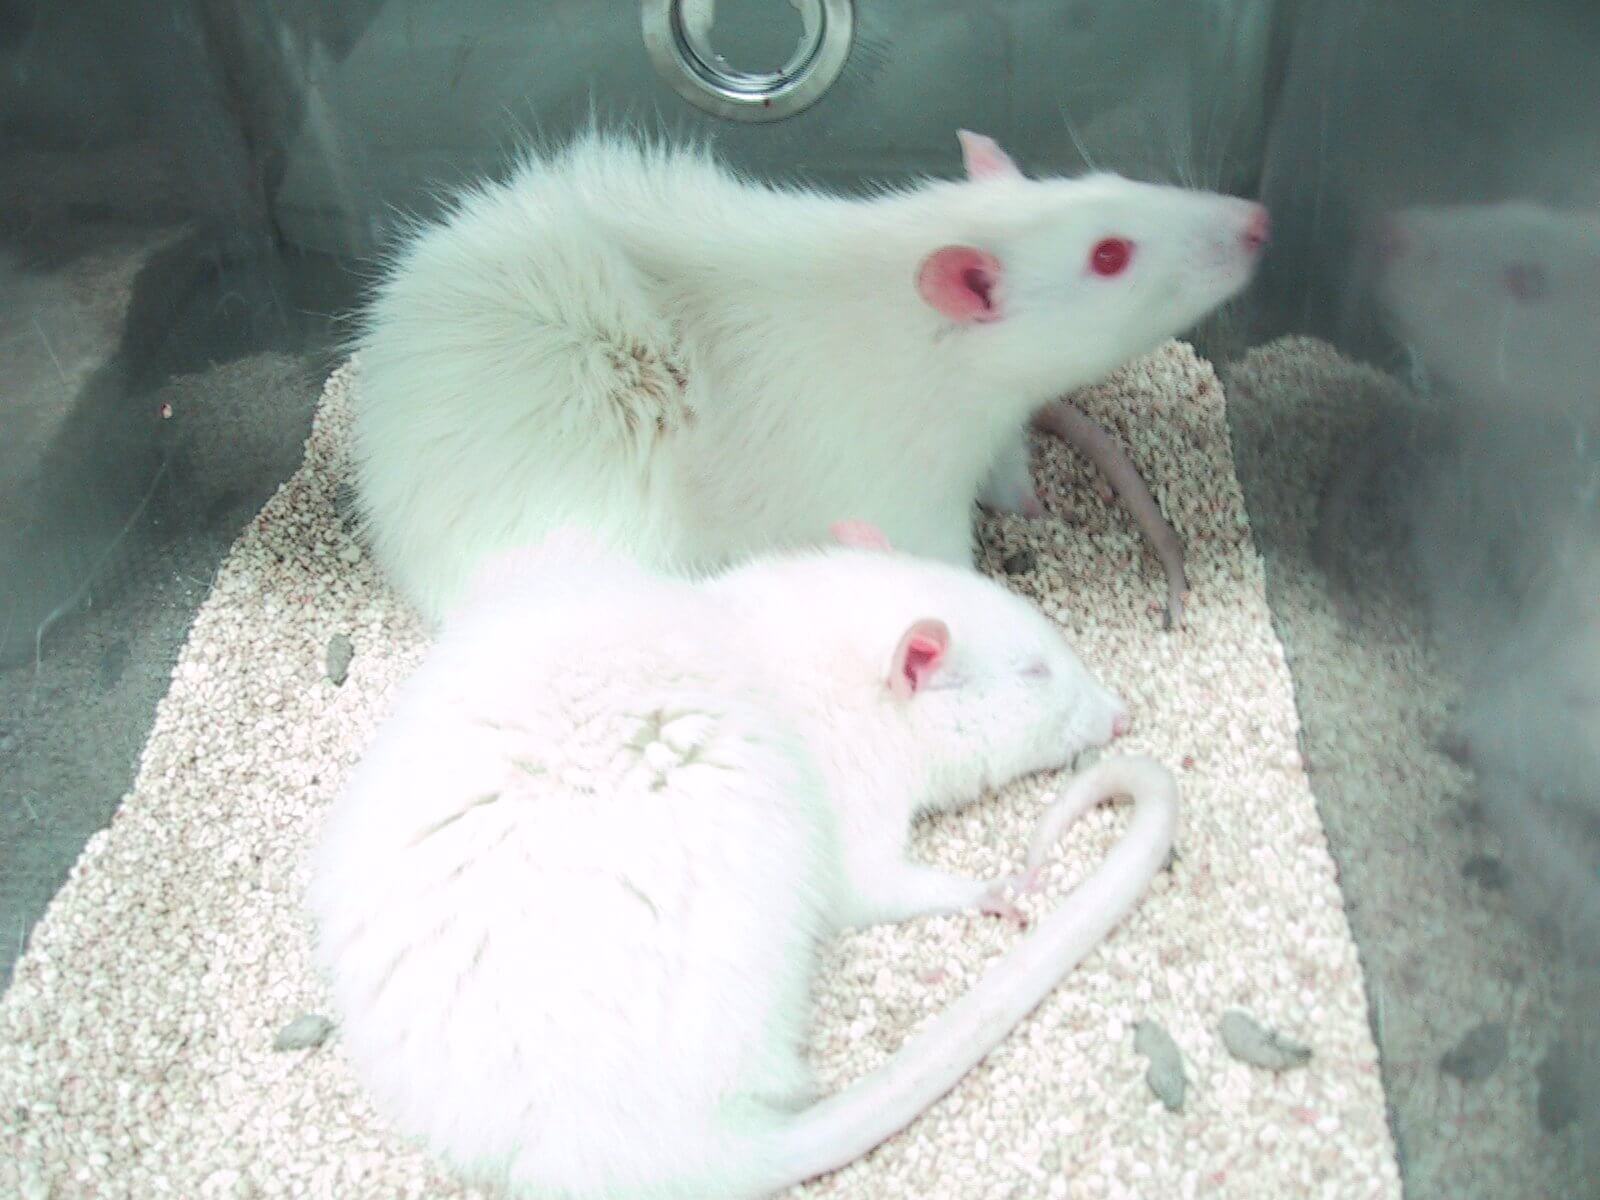 Dix ans après l’interdiction des tests pour les cosmétiques, les animaux sont toujours tourmentés dans des laboratoires